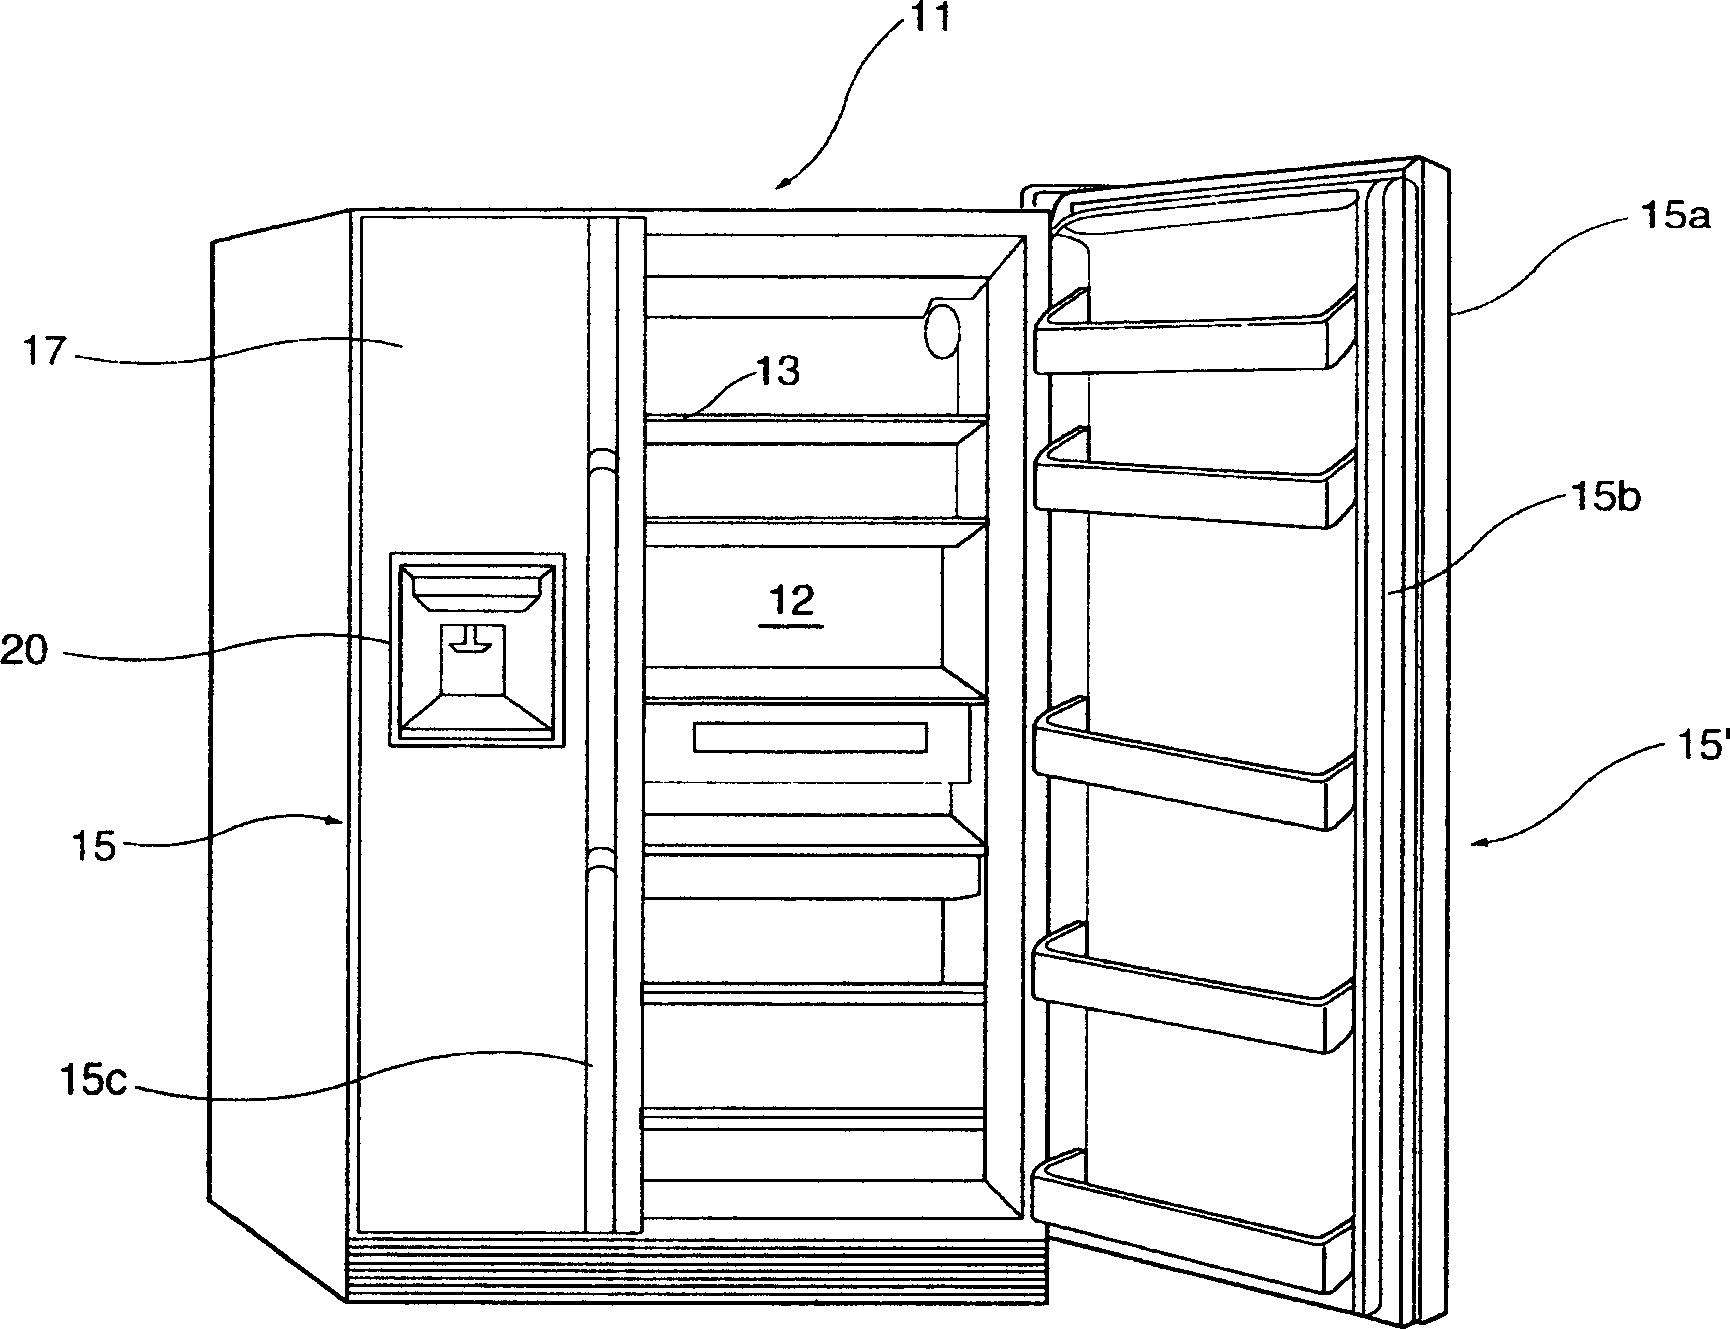 Refrigerator door structure